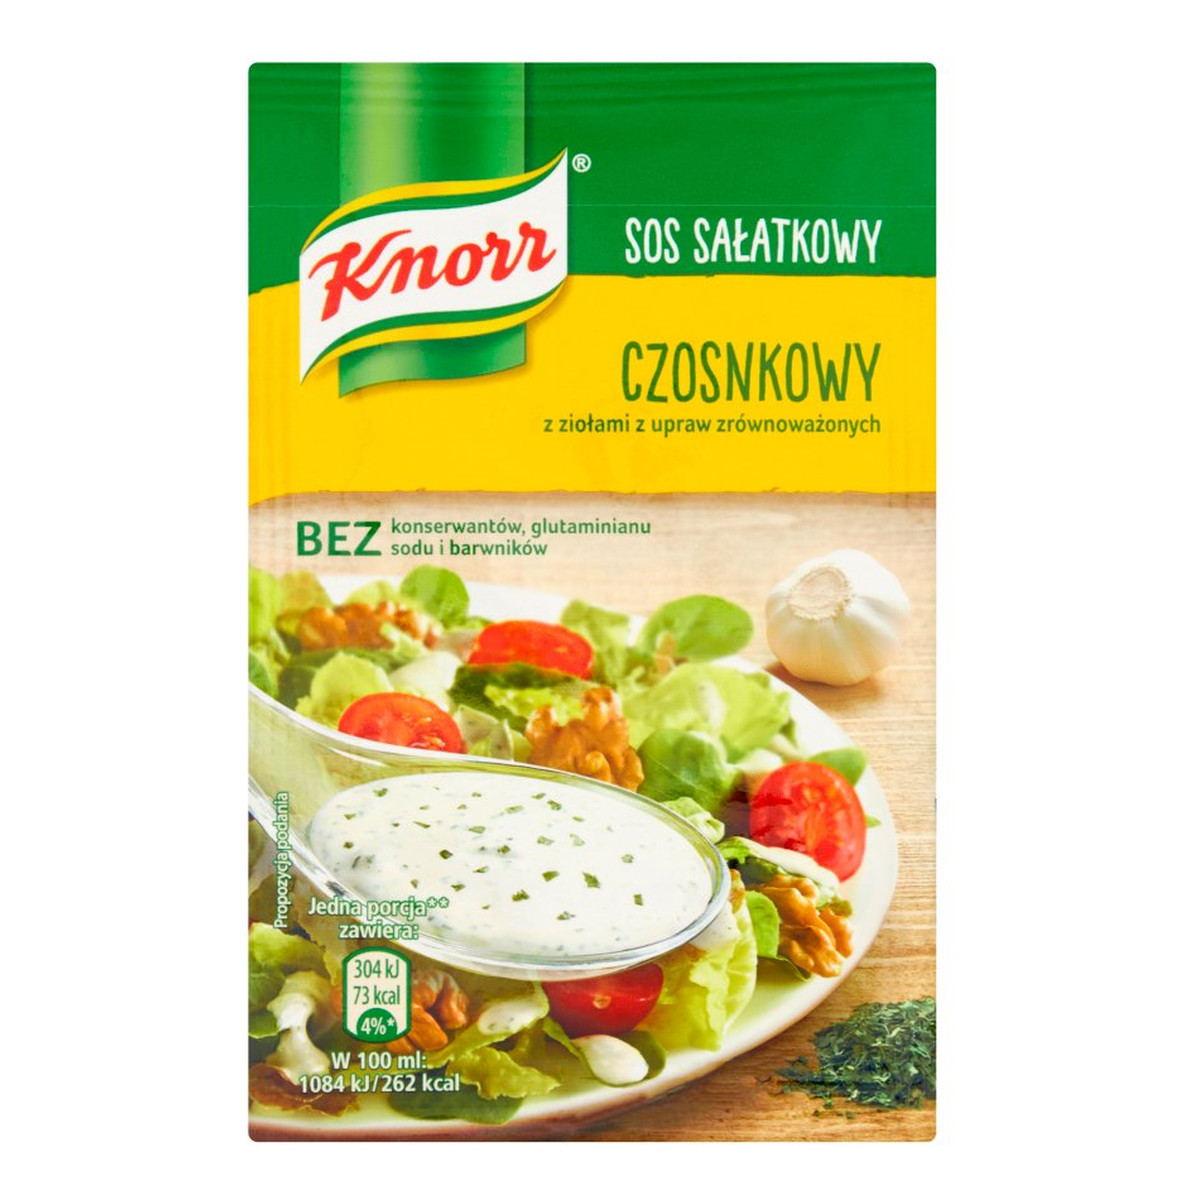 Knorr Sos sałatkowy czosnkowy 8g